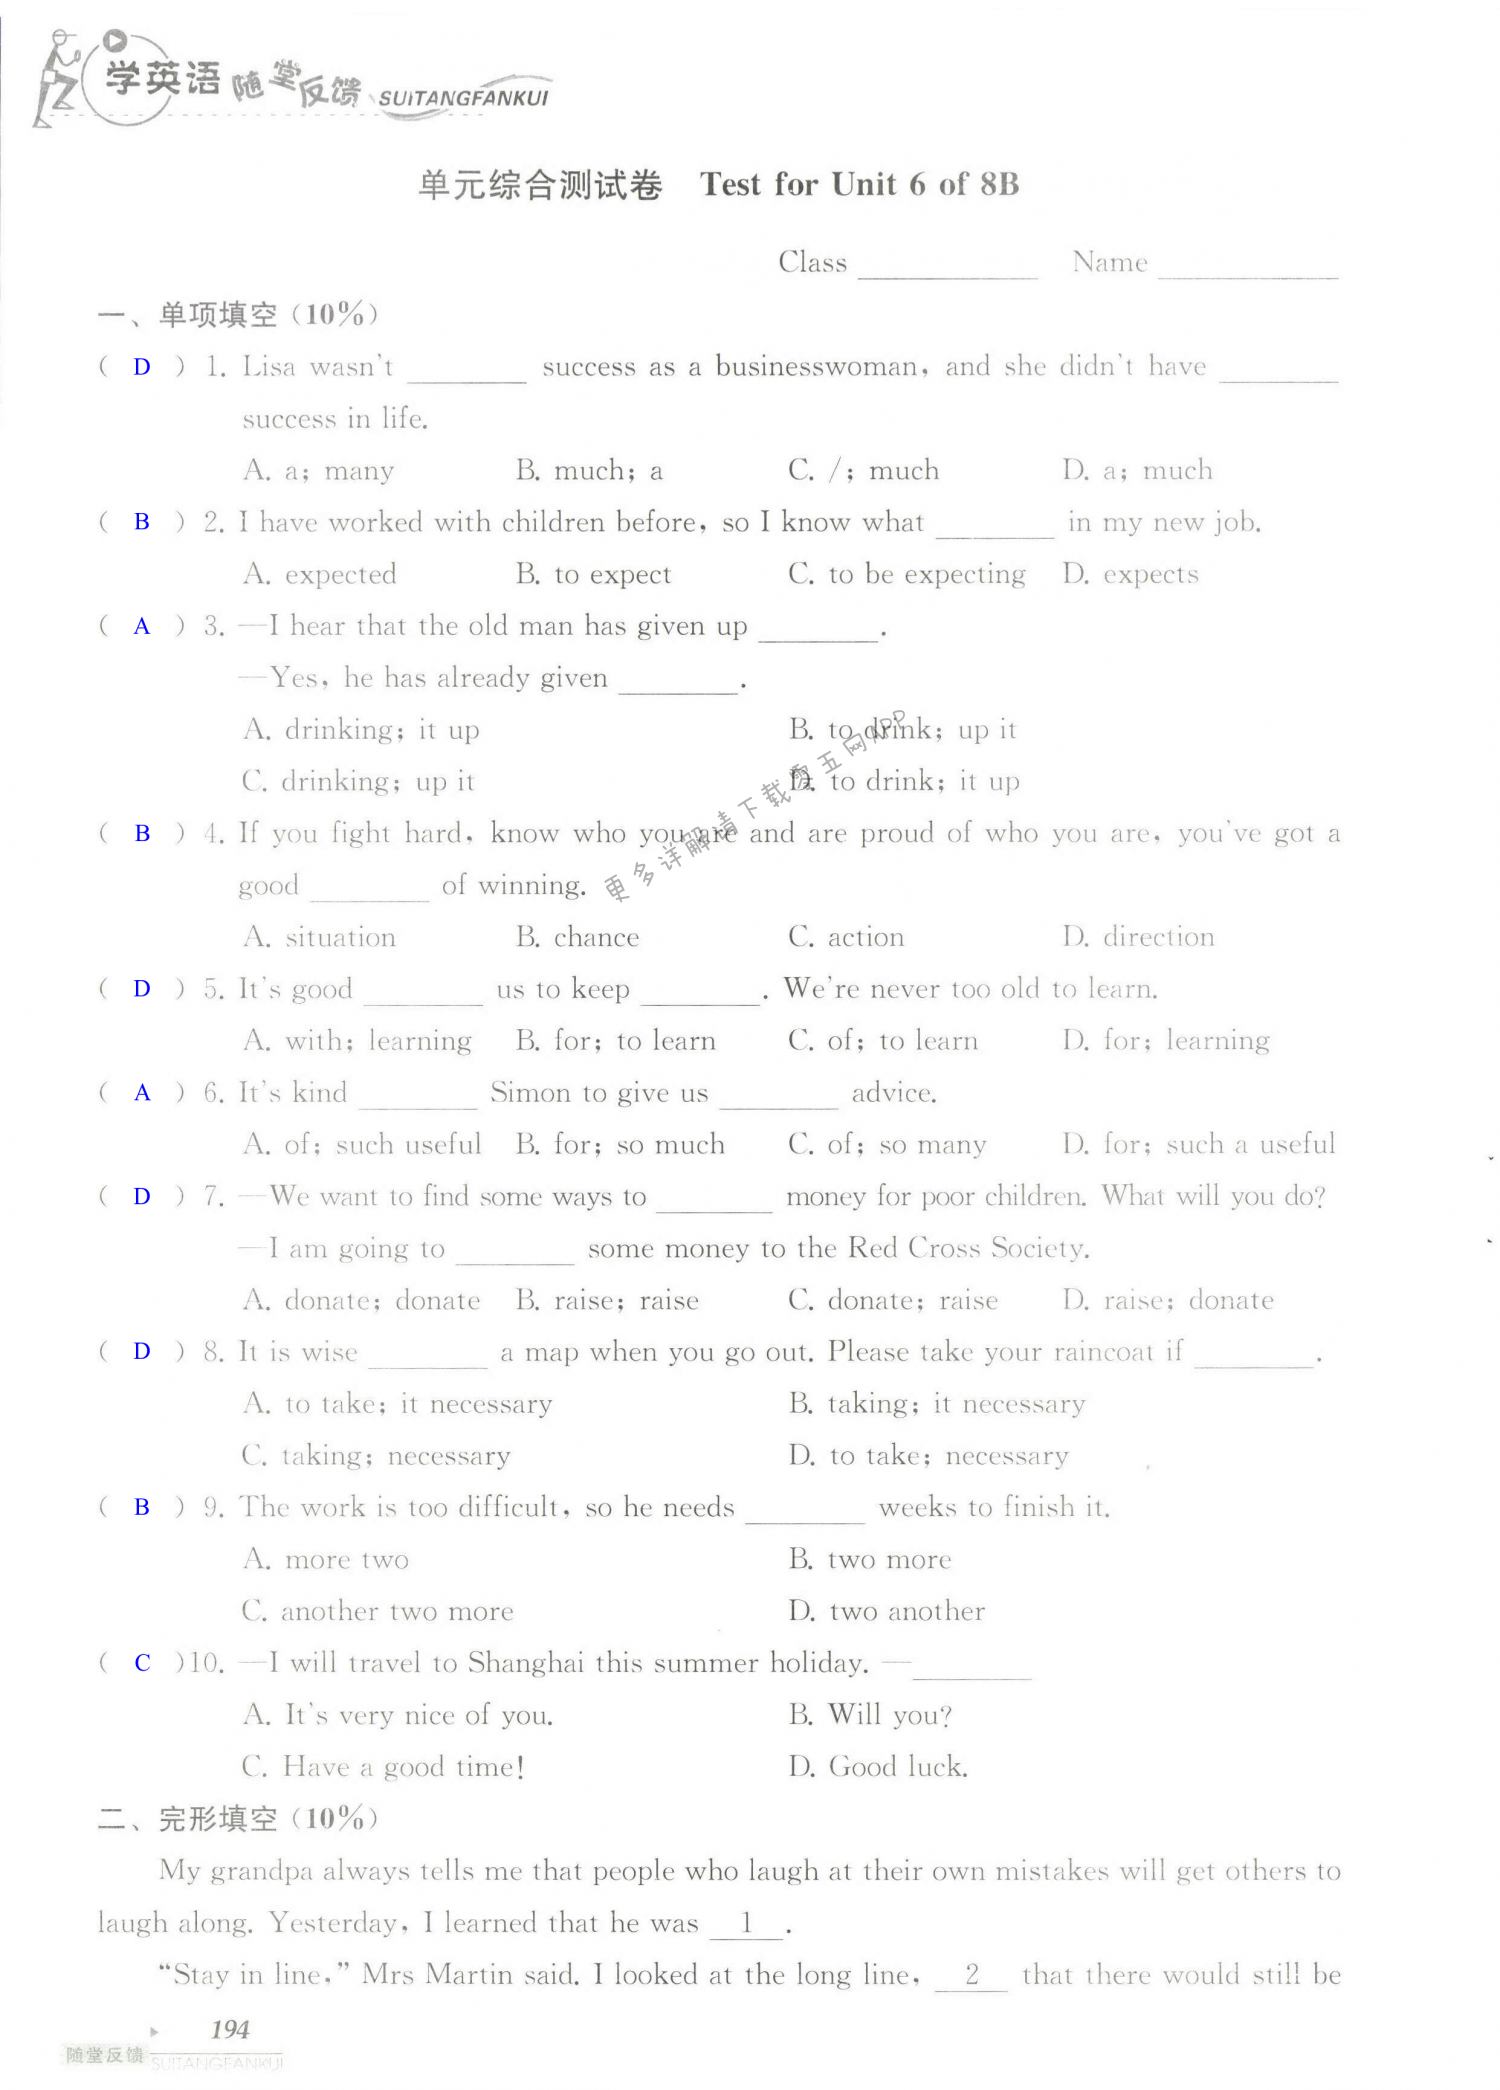 单元综合测试卷 Test for Unit 6 of 8B - 第194页